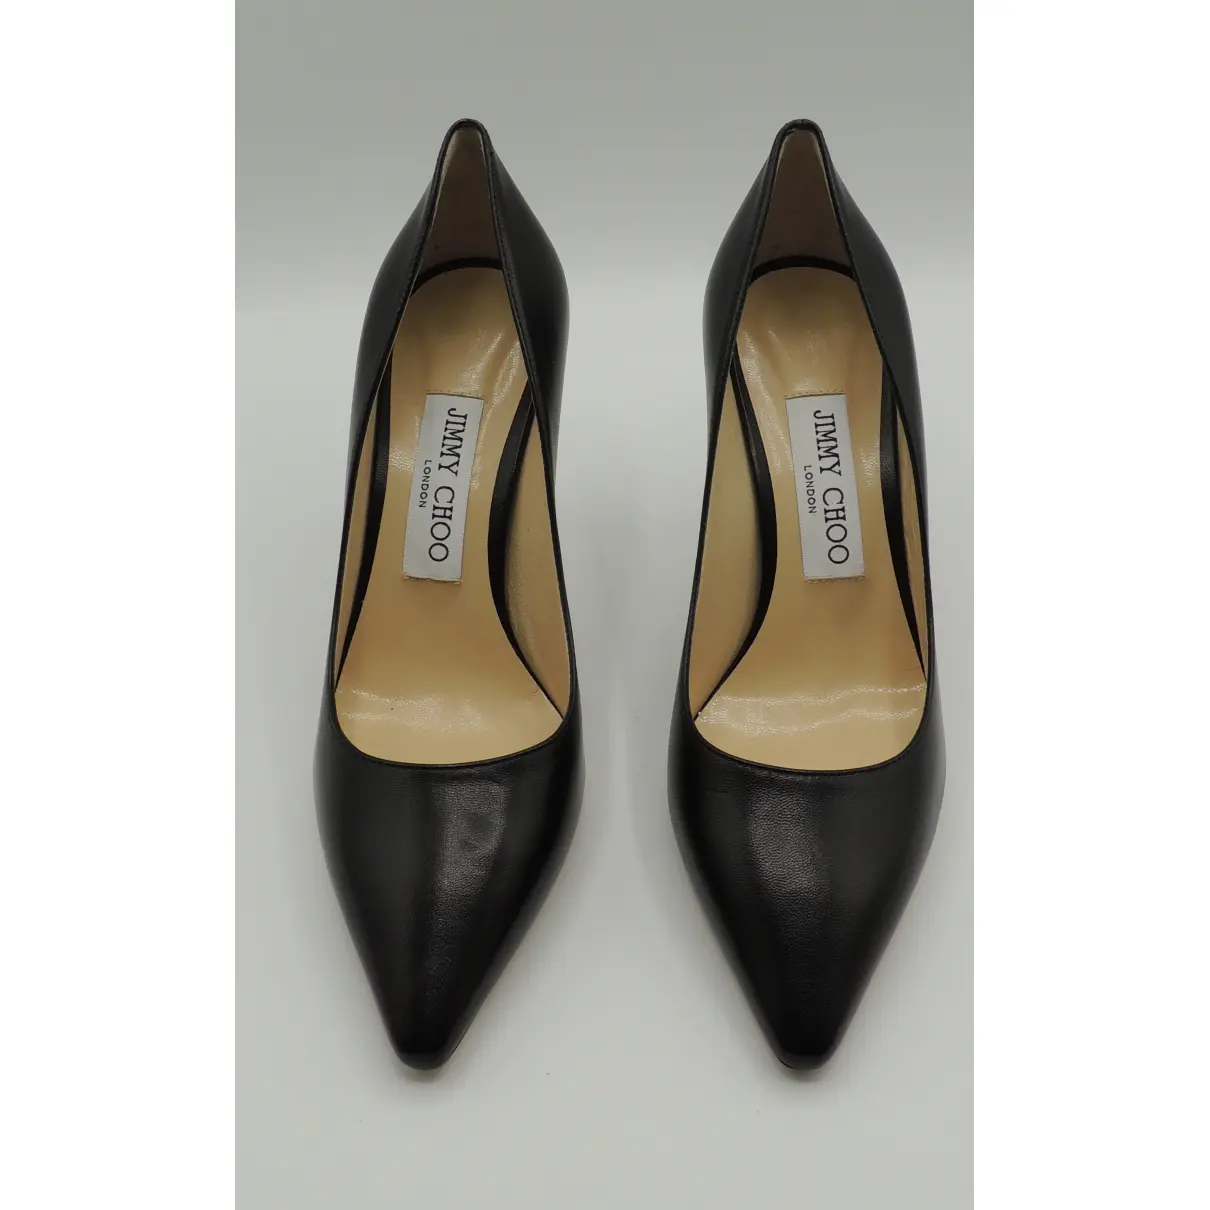 Buy Jimmy Choo Romy leather heels online